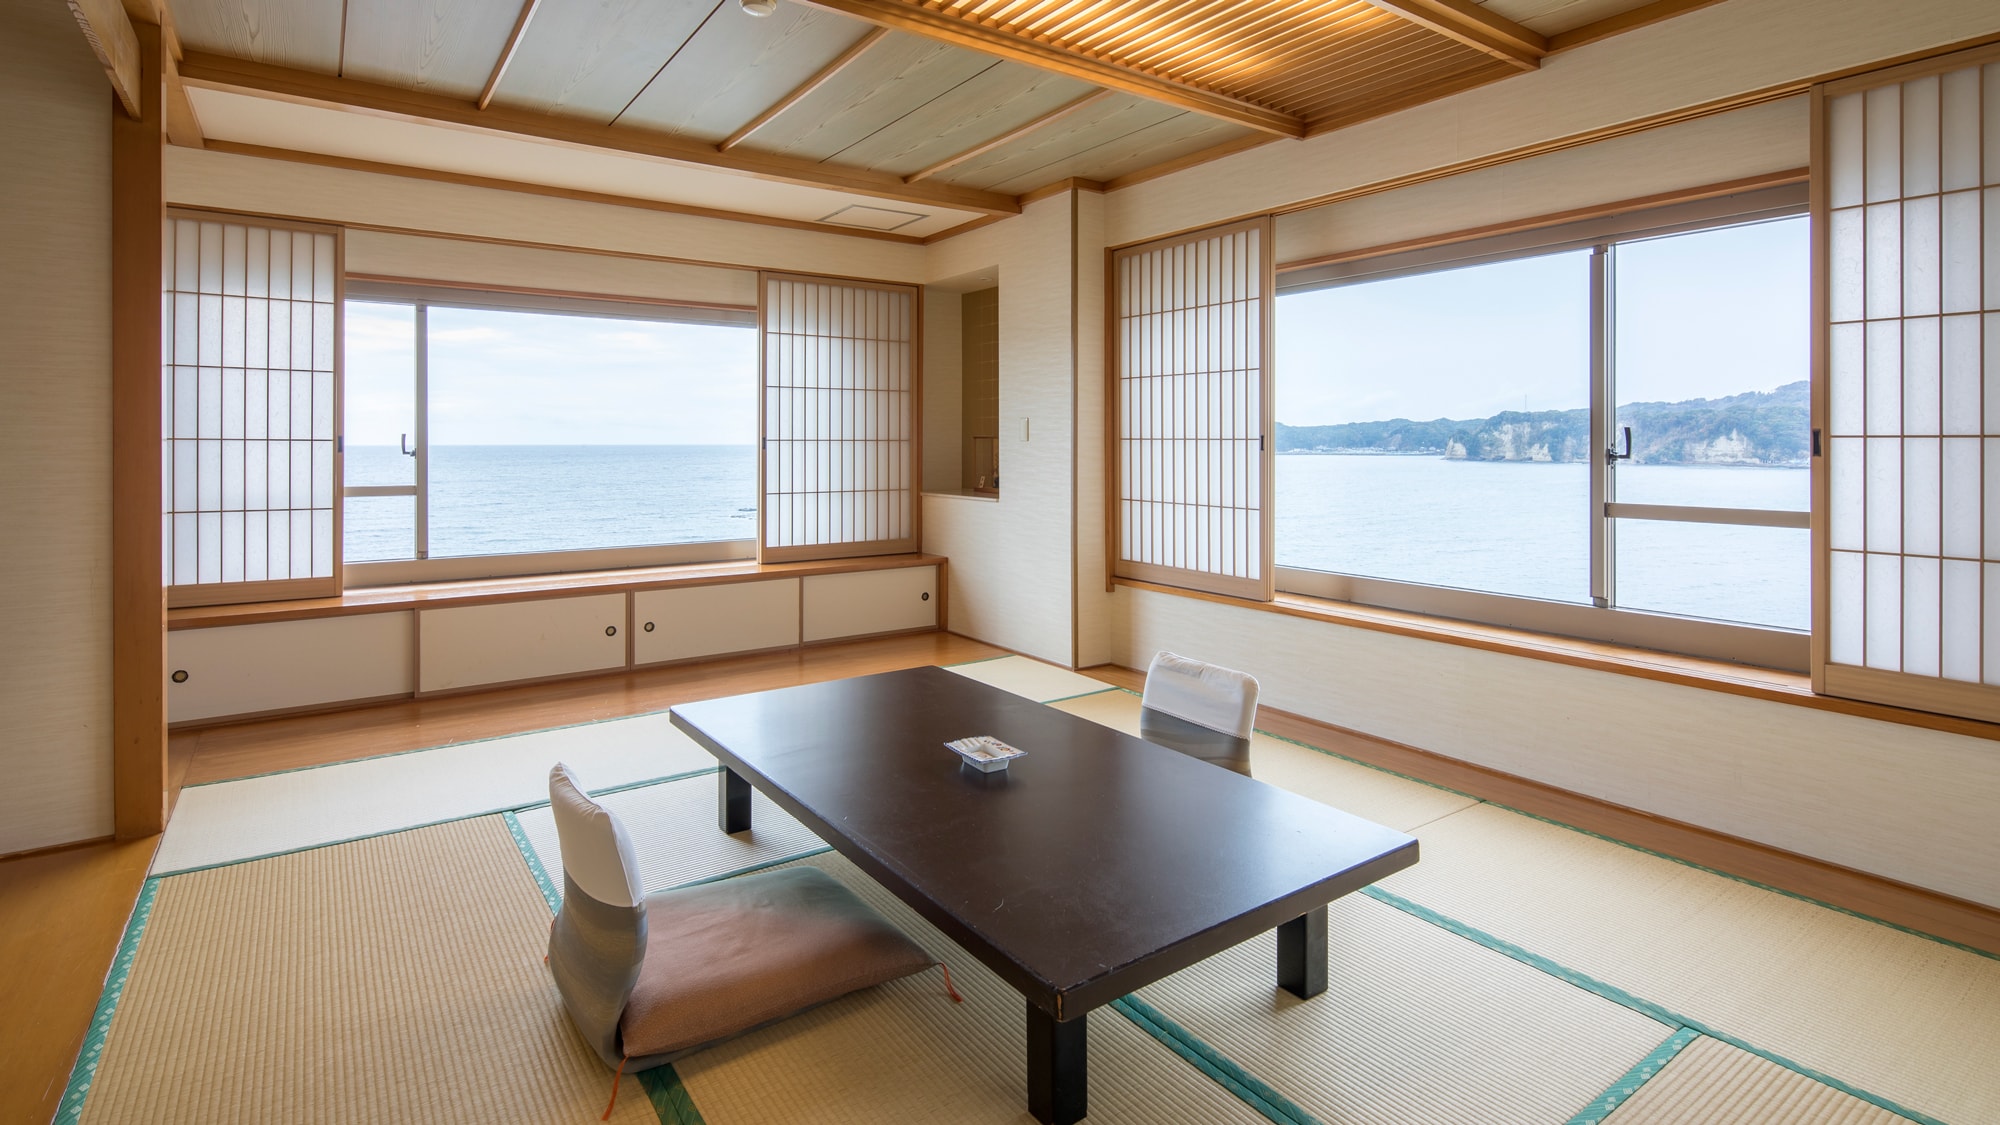 ◆ [ห้องพิเศษ (ตัวอย่าง)] พักผ่อนอย่างสบายในห้องสไตล์ญี่ปุ่นแท้ ๆ พร้อมวิวทะเลประมาณ 70 ตารางเมตร